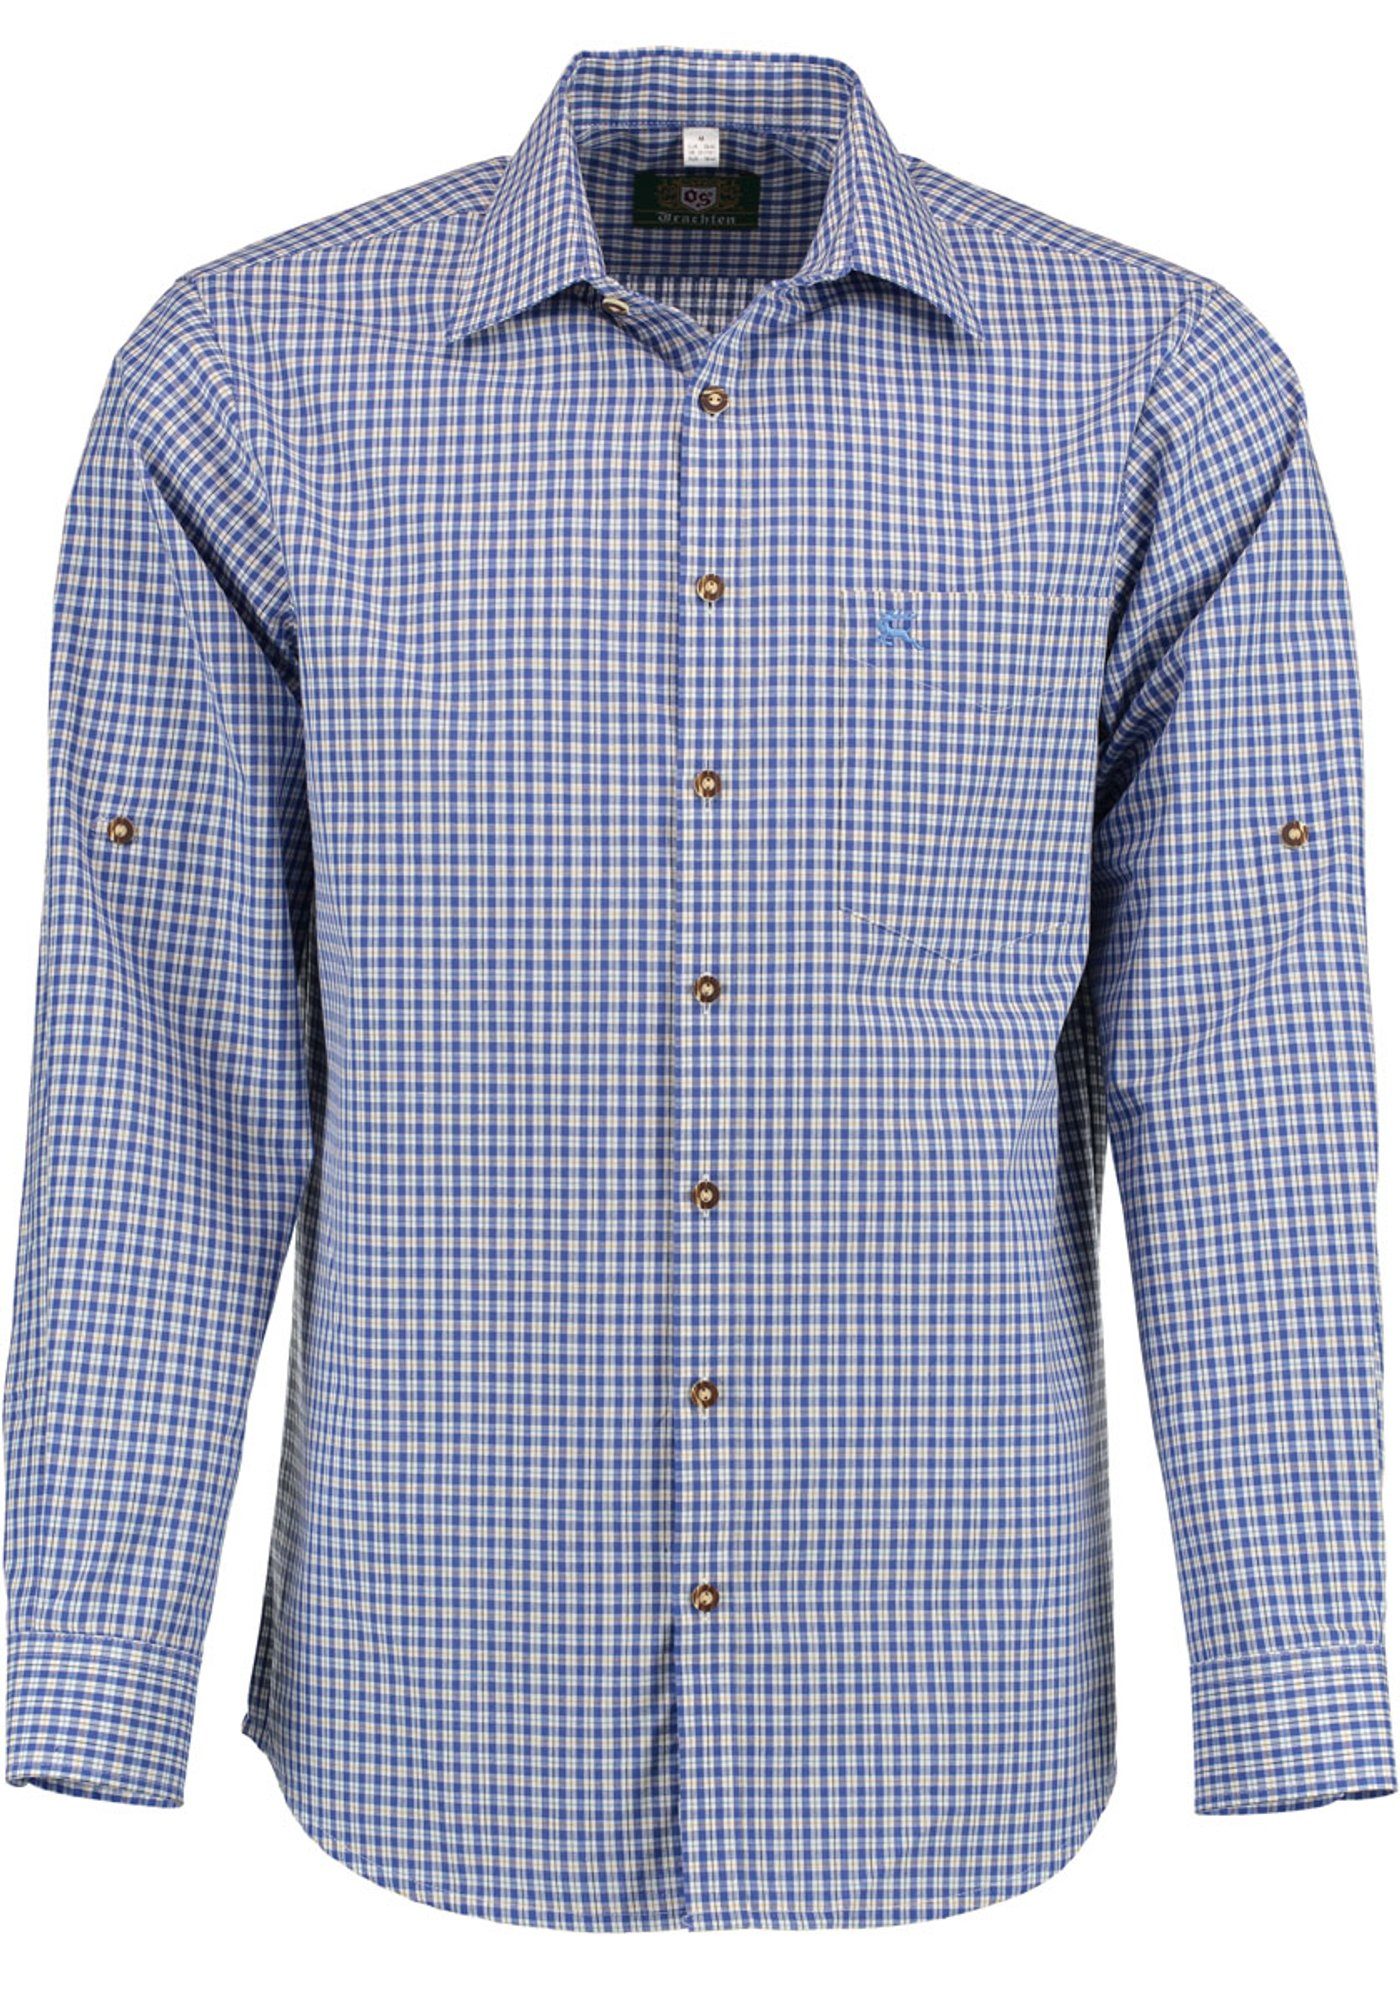 OS-Trachten Trachtenhemd Vakas Langarmhemd mit Krempelärmeln und Hirsch-Stickerei auf der Brusttasche kornblau